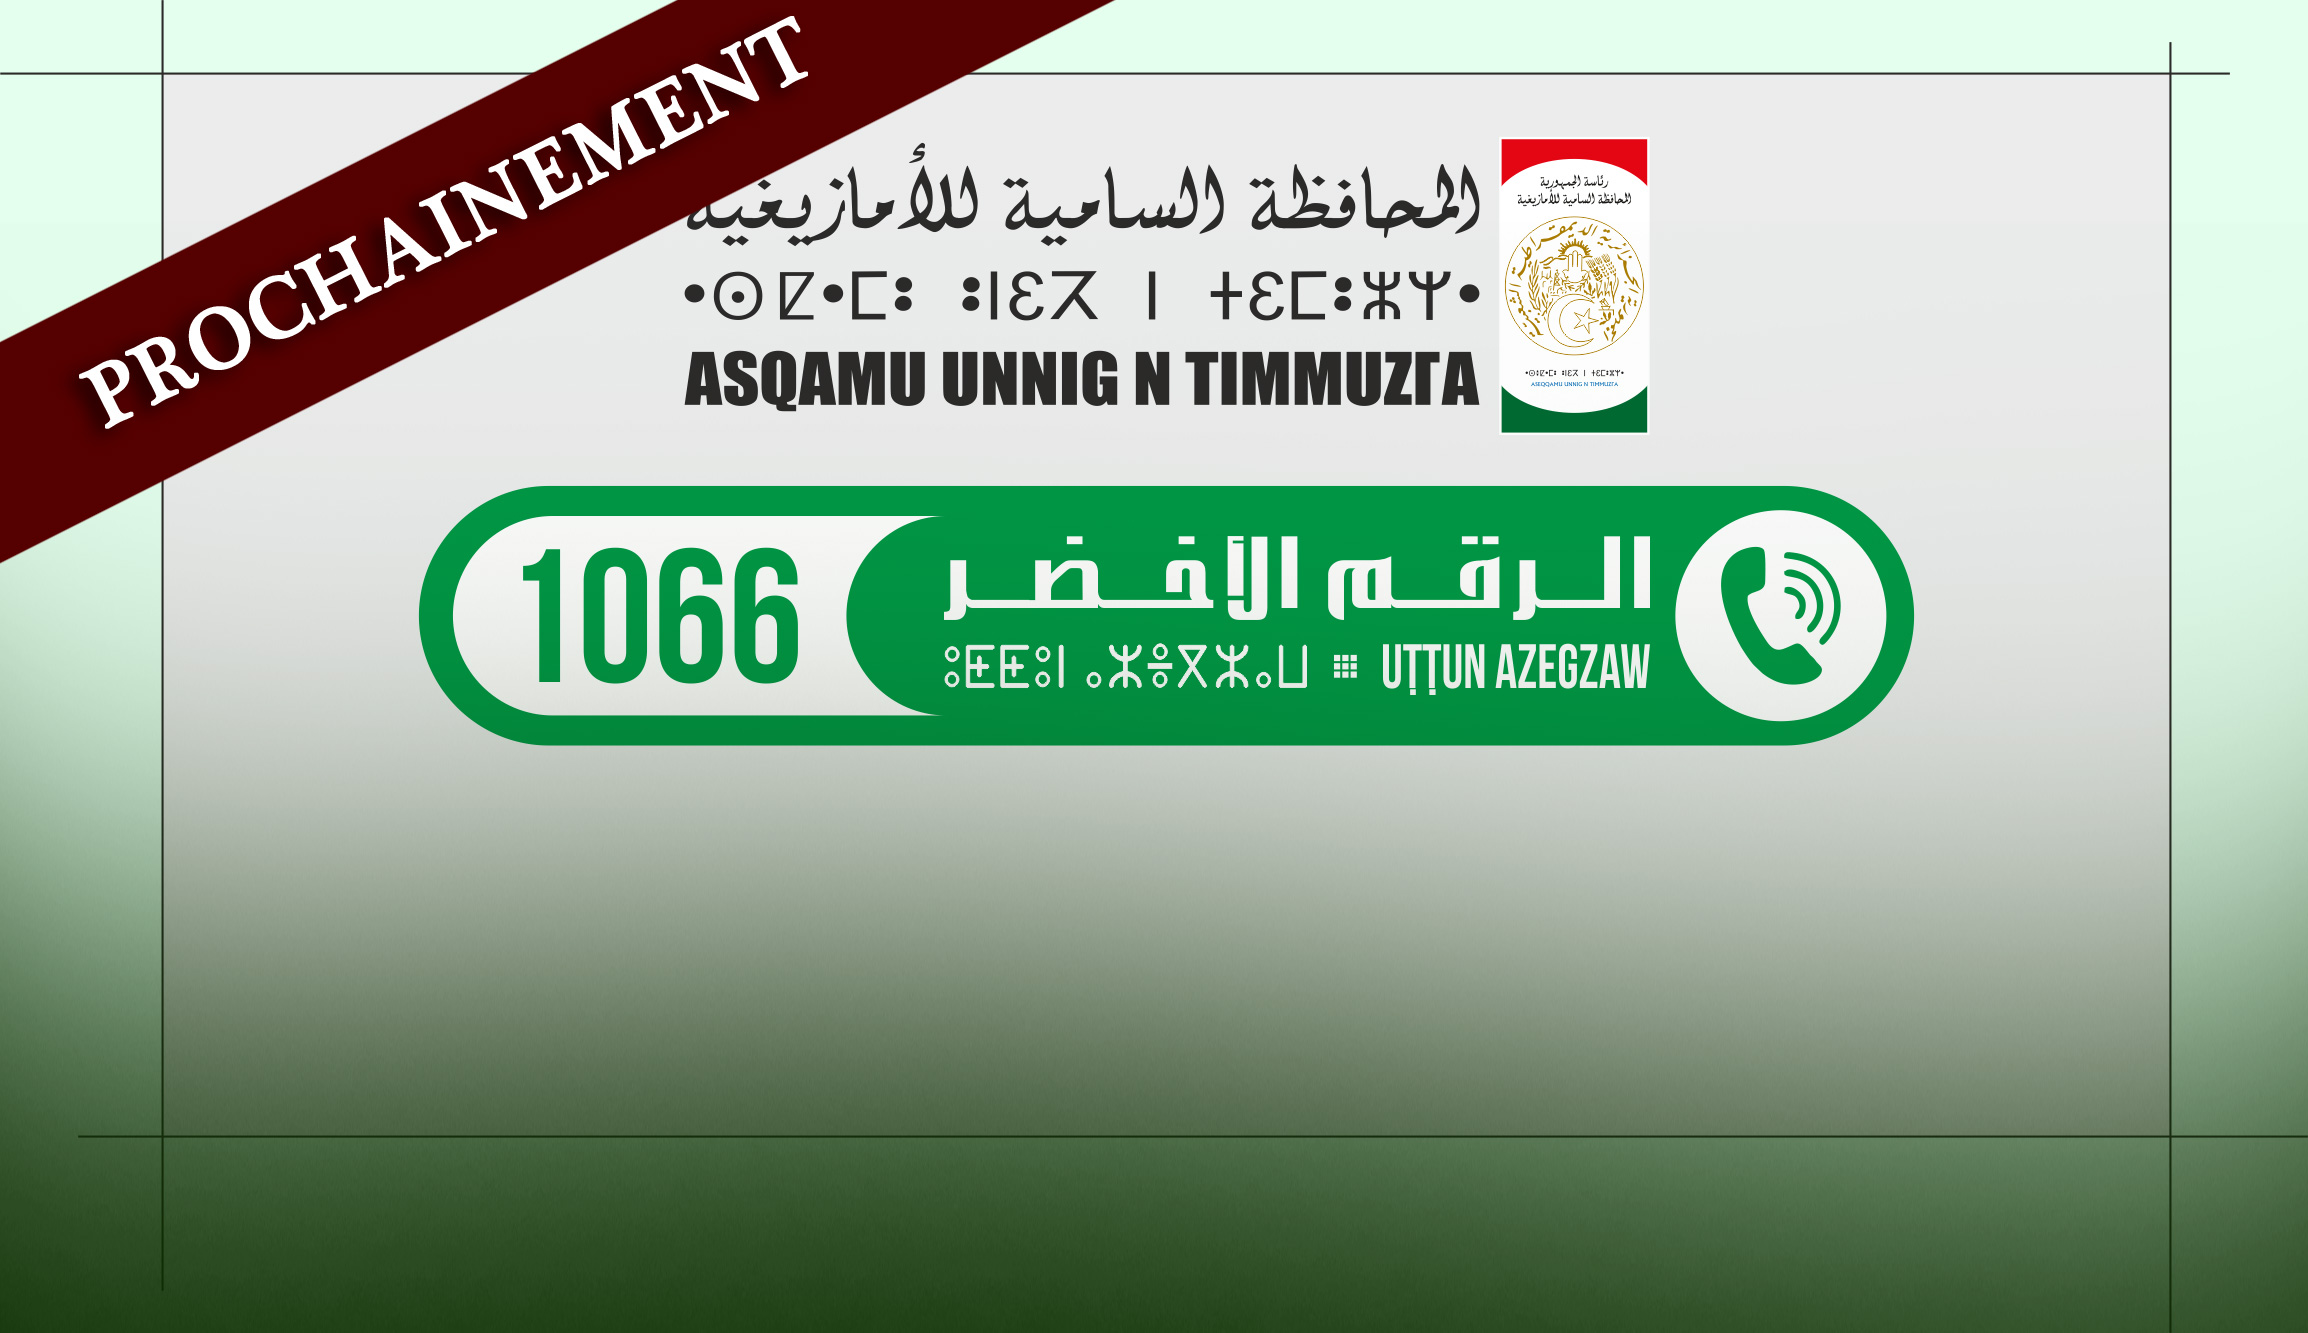 APS - Le HCA lancera ‘‘prochainement’’ un numéro vert de la traduction vers le tamazight